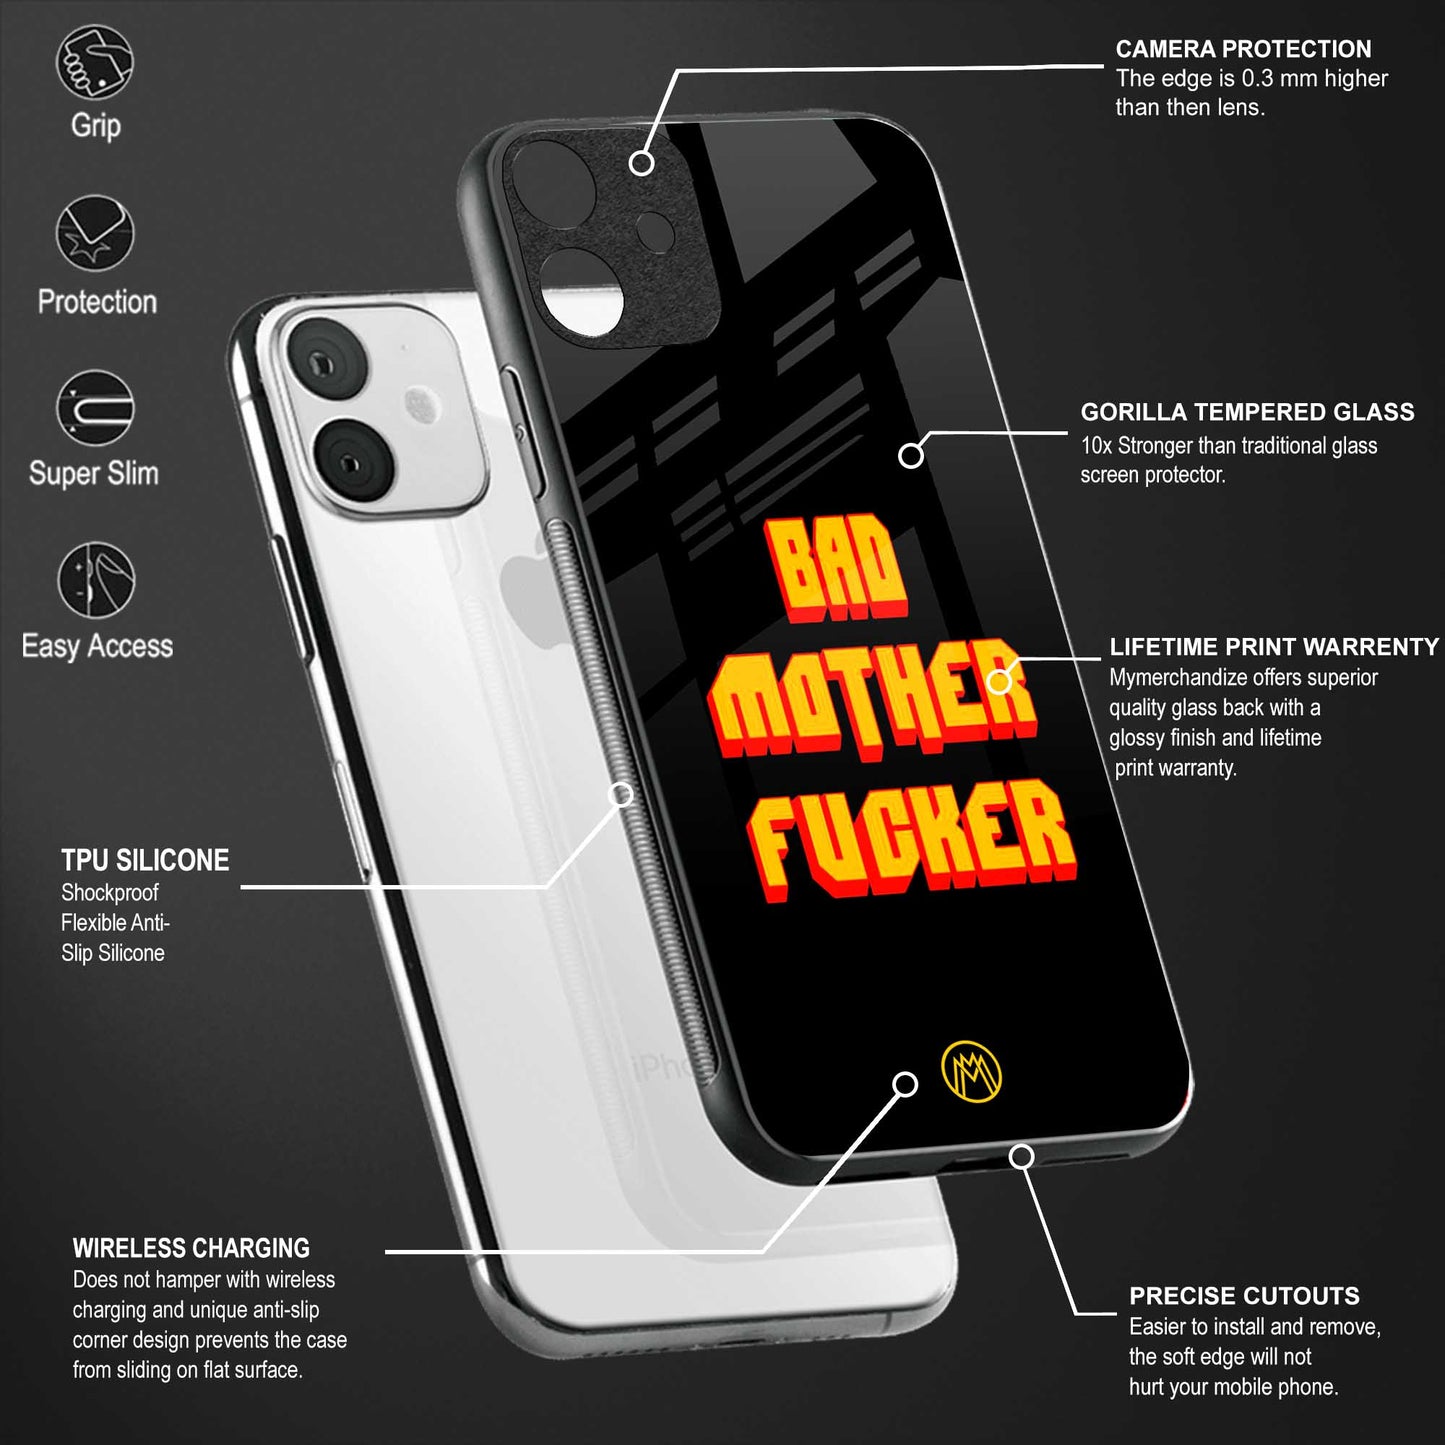 bad motherfcker back phone cover | glass case for vivo y22